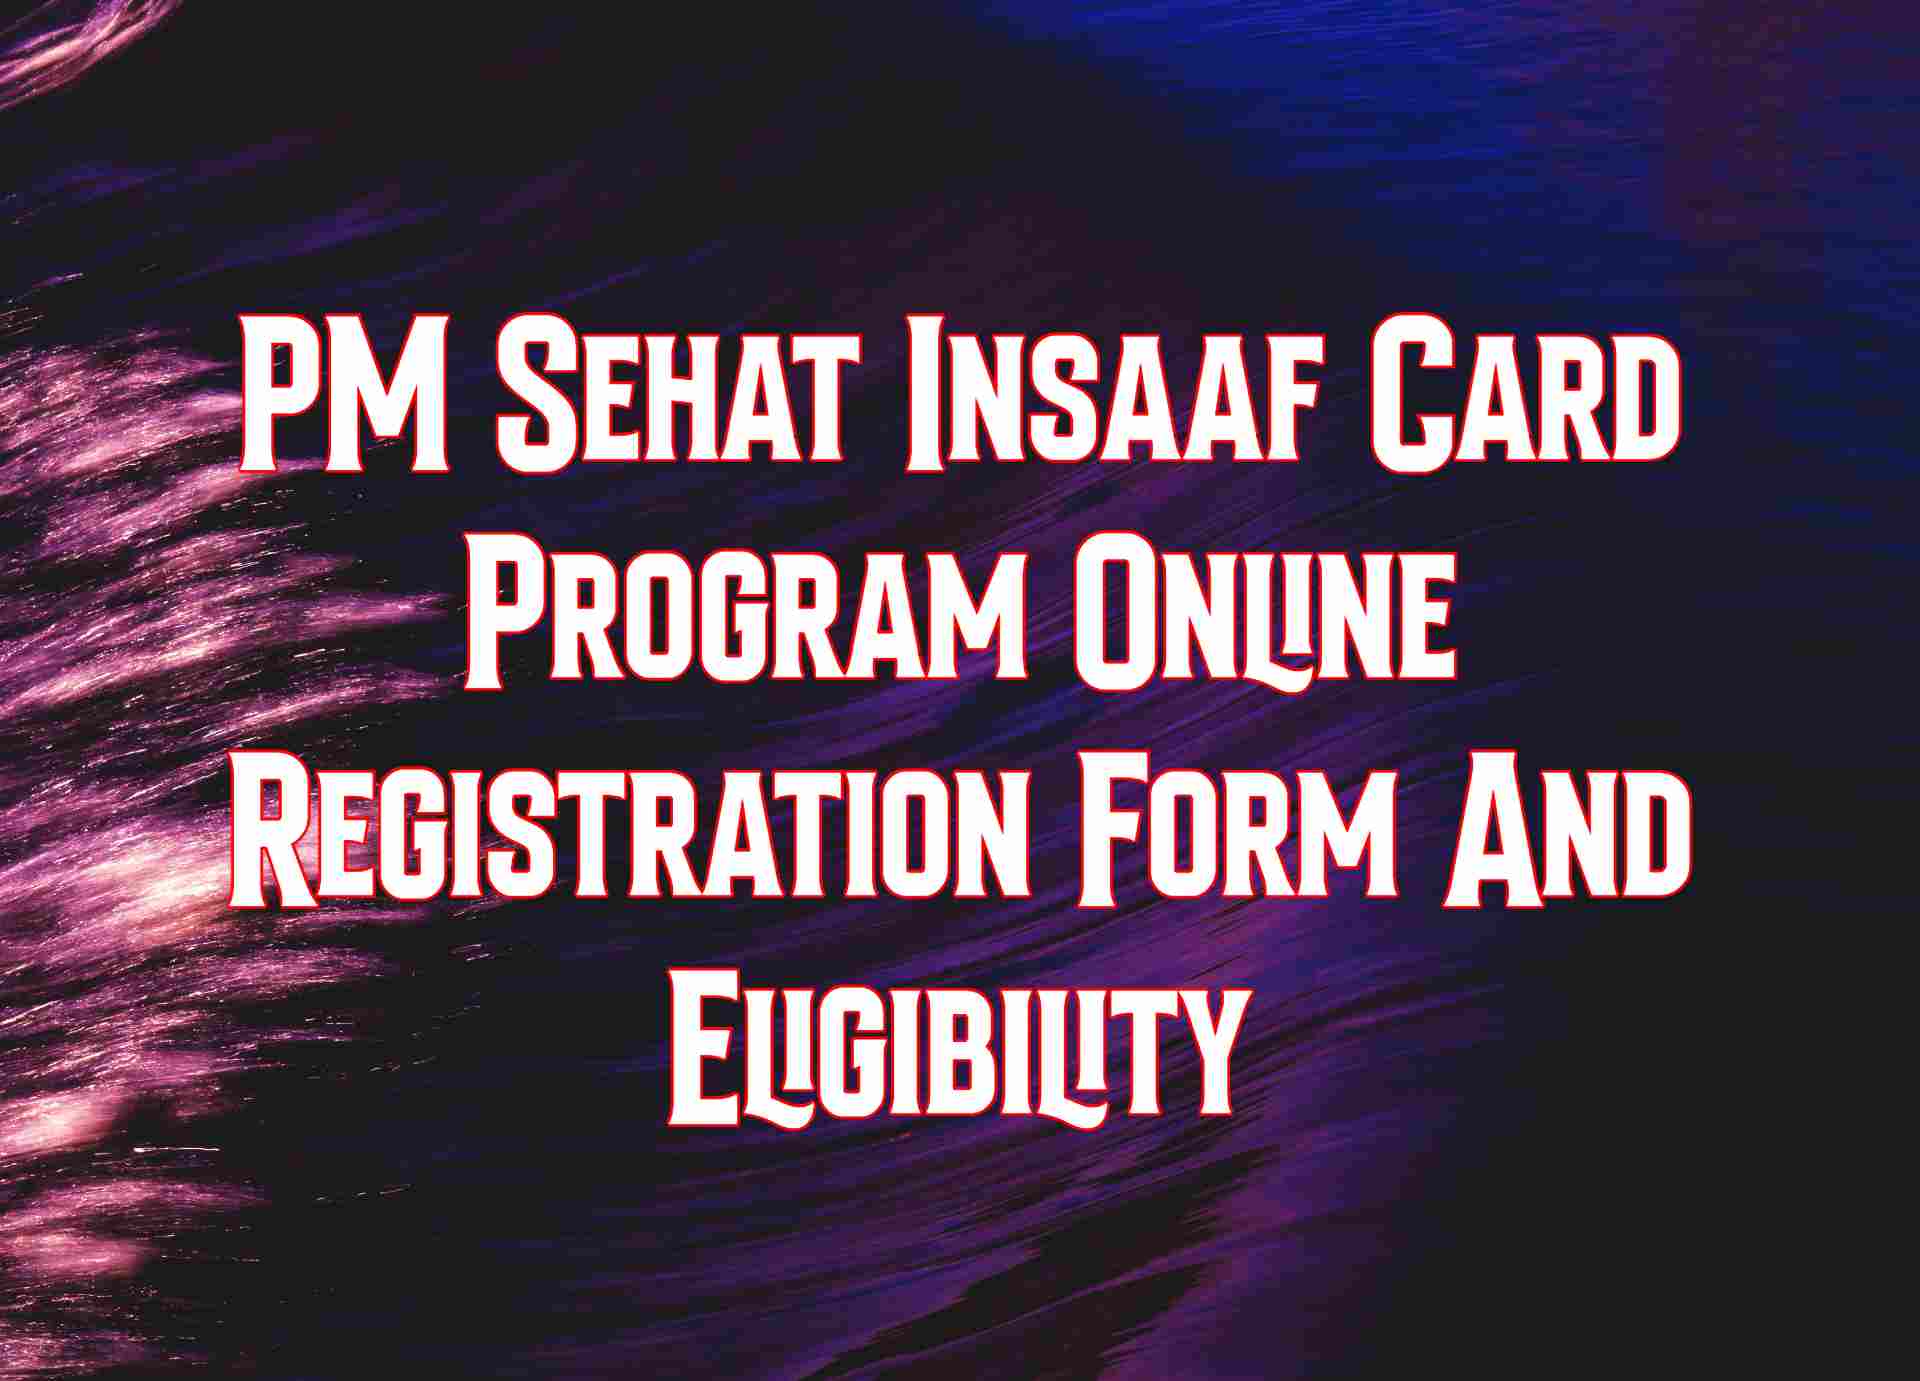 PM Sehat Insaaf Card Program Online Registration Form And Eligibility